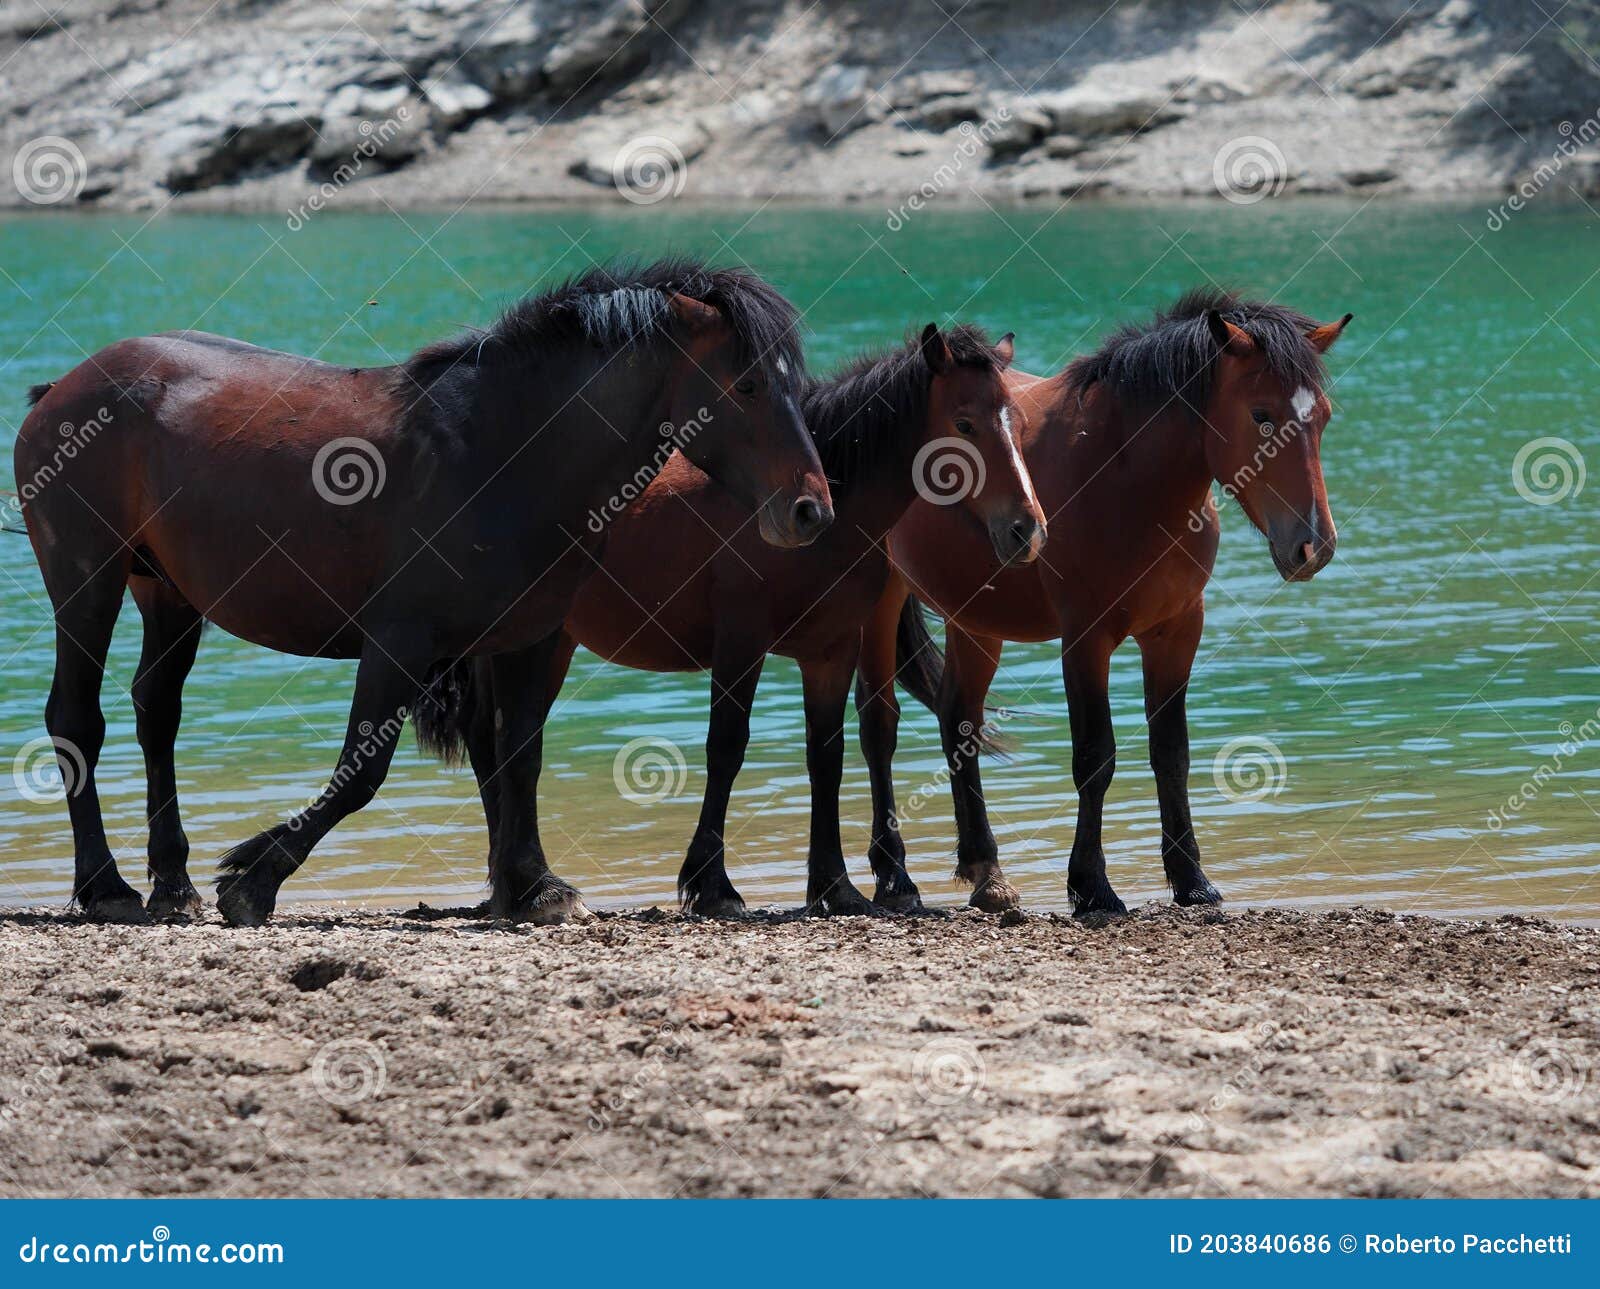 a free horse family in giacopiane lake